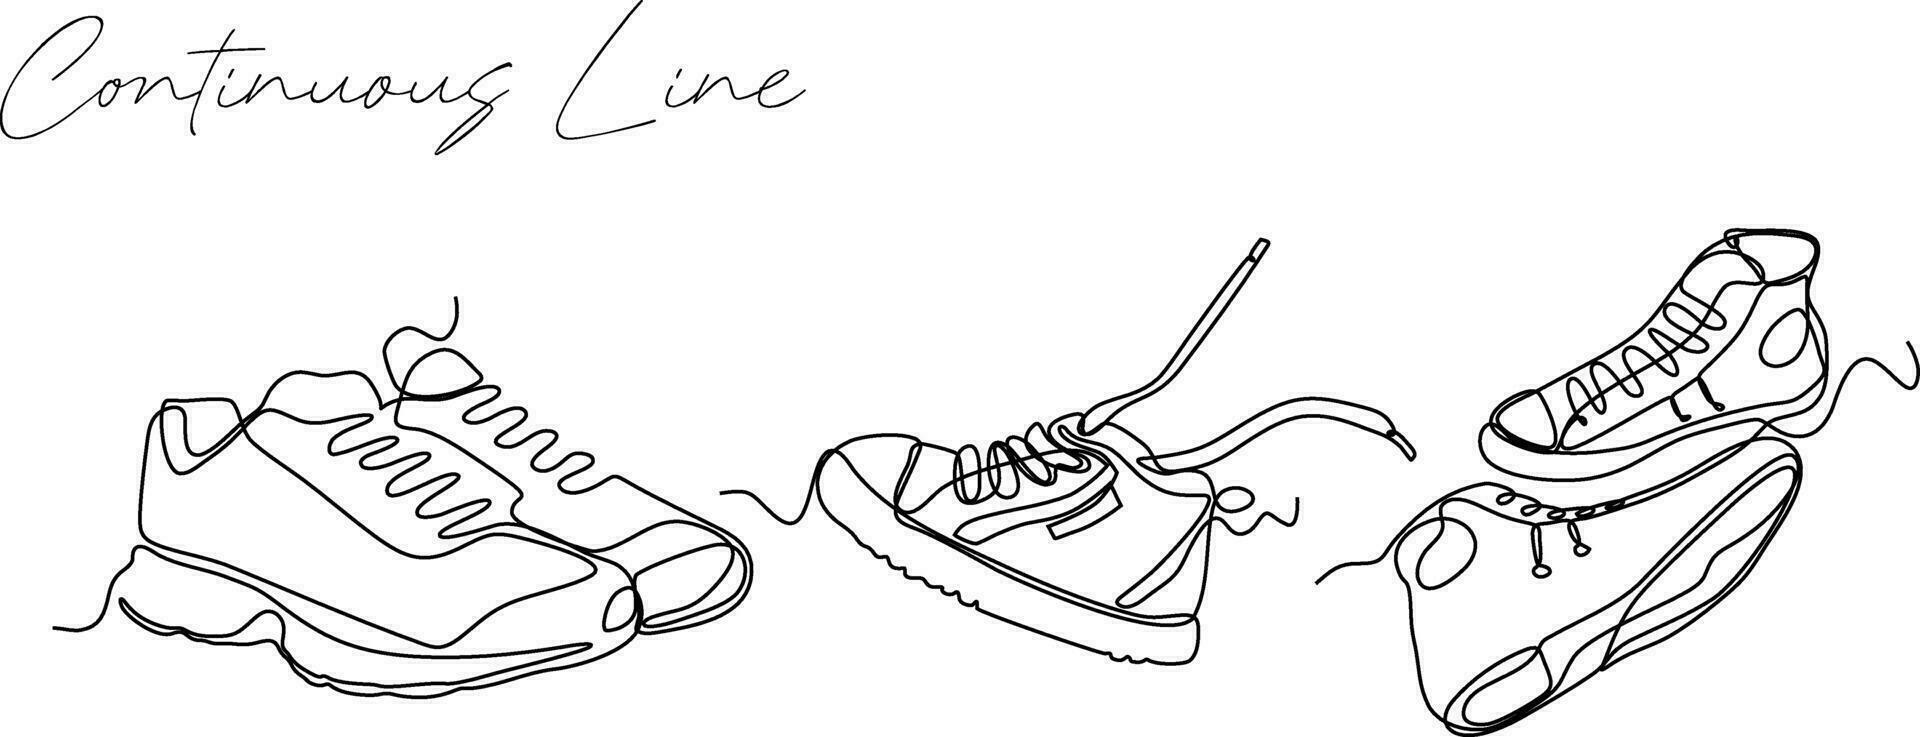 kontinuierlich einstellen Linie Zeichnung von Schuhe abstrakt Hintergrund gezeichnet mit einer Linie. Vektor Illustration.